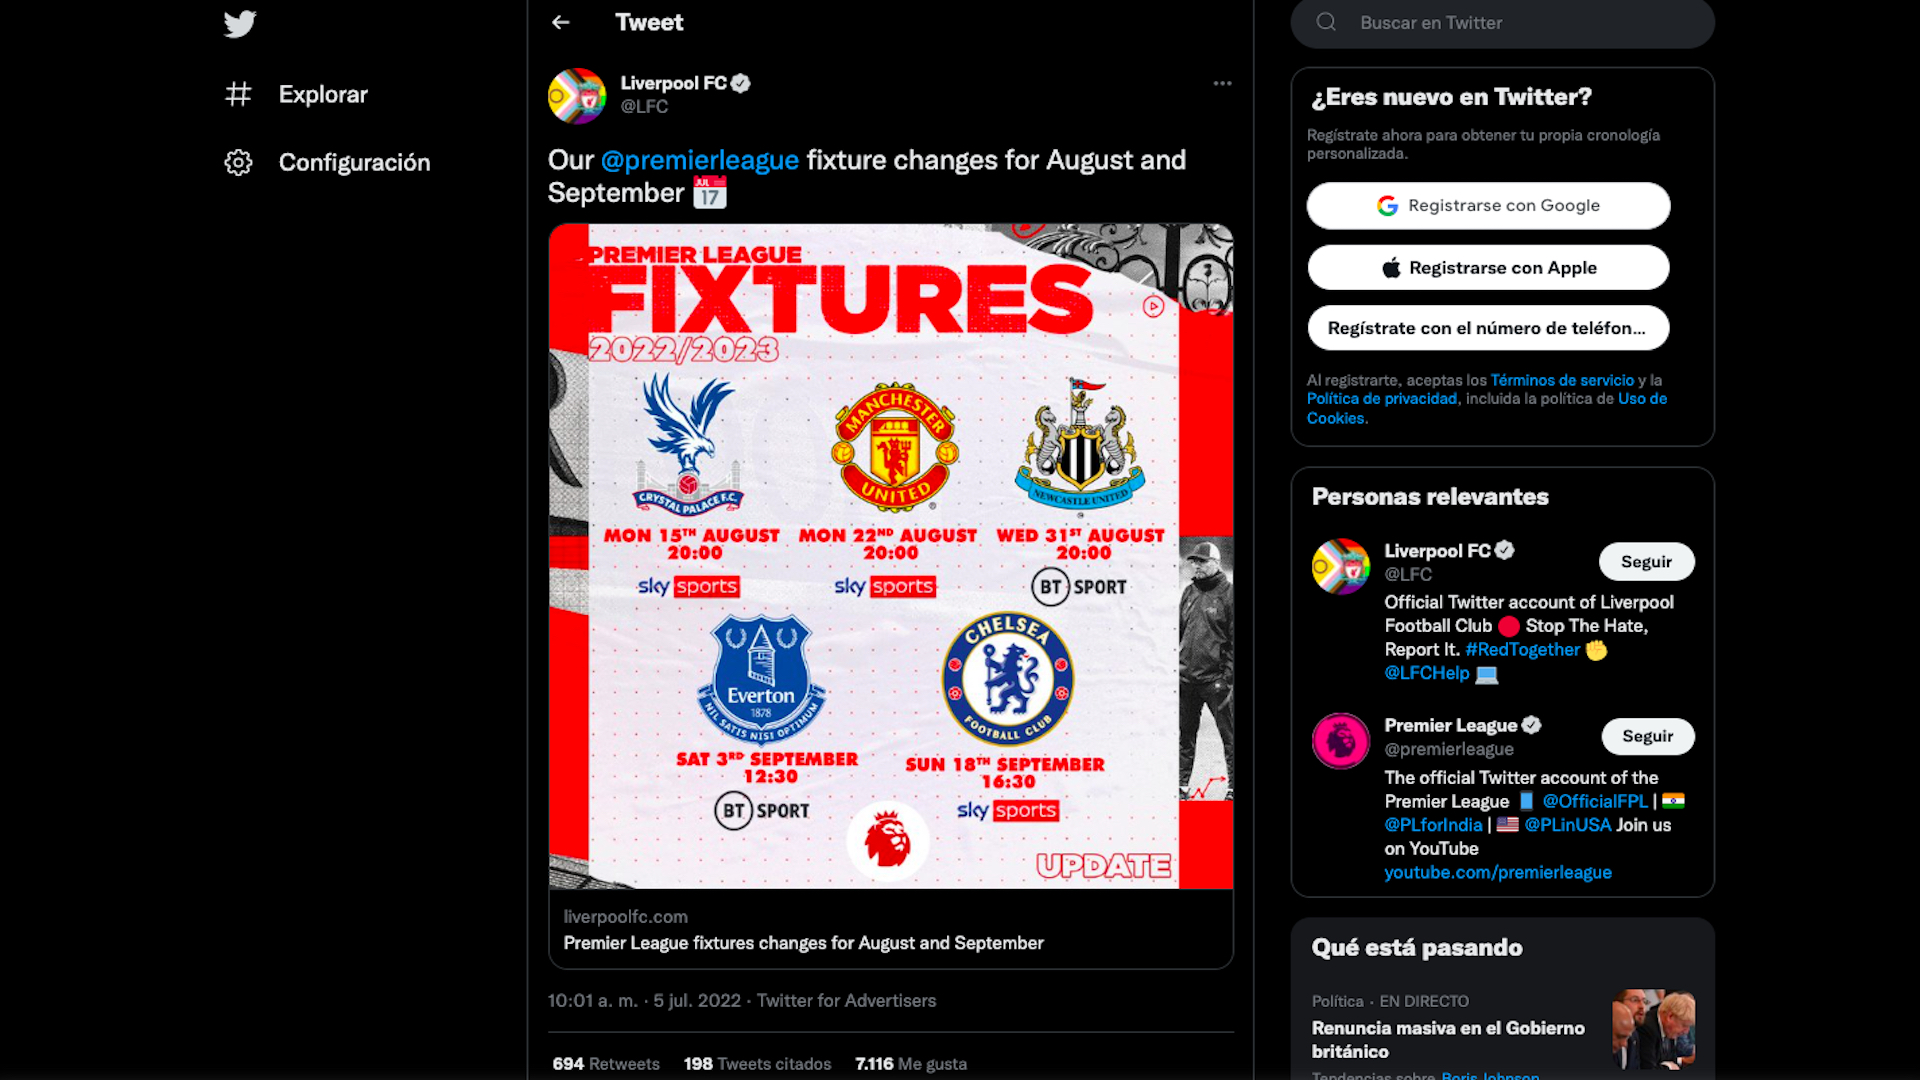 Modificaciones en el fixture de Liverpool para la campaña 2022/23 en agosto y septiembre / (Twitter: @LFC)